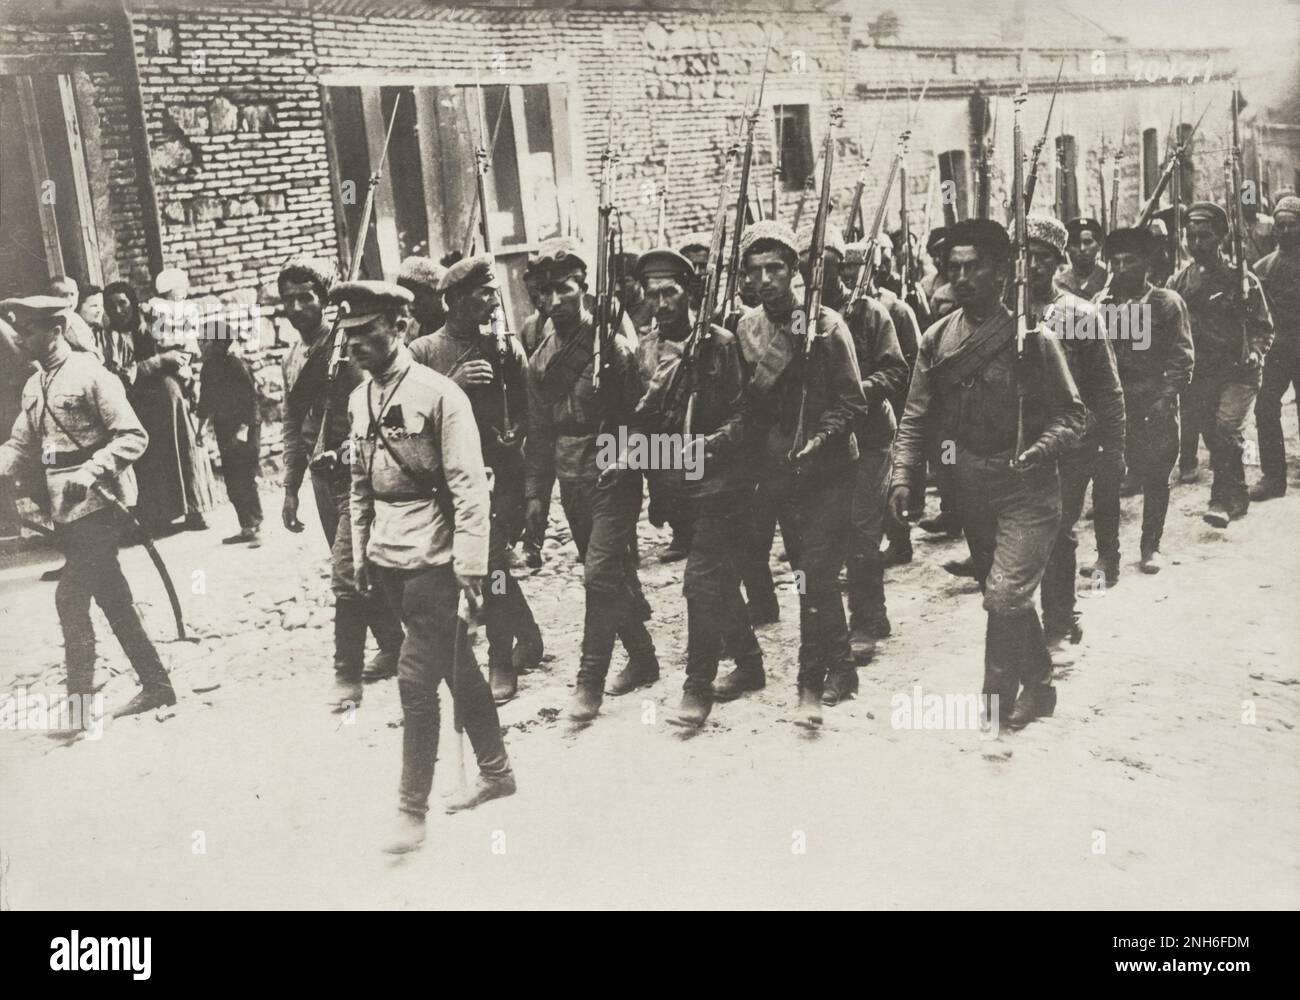 1914-1918. Prima guerra mondiale L'immagine mostra un treno di soldati russi che, secondo l'iscrizione sull'immagine, partecipano ad una cerimonia funeraria. Foto Stock